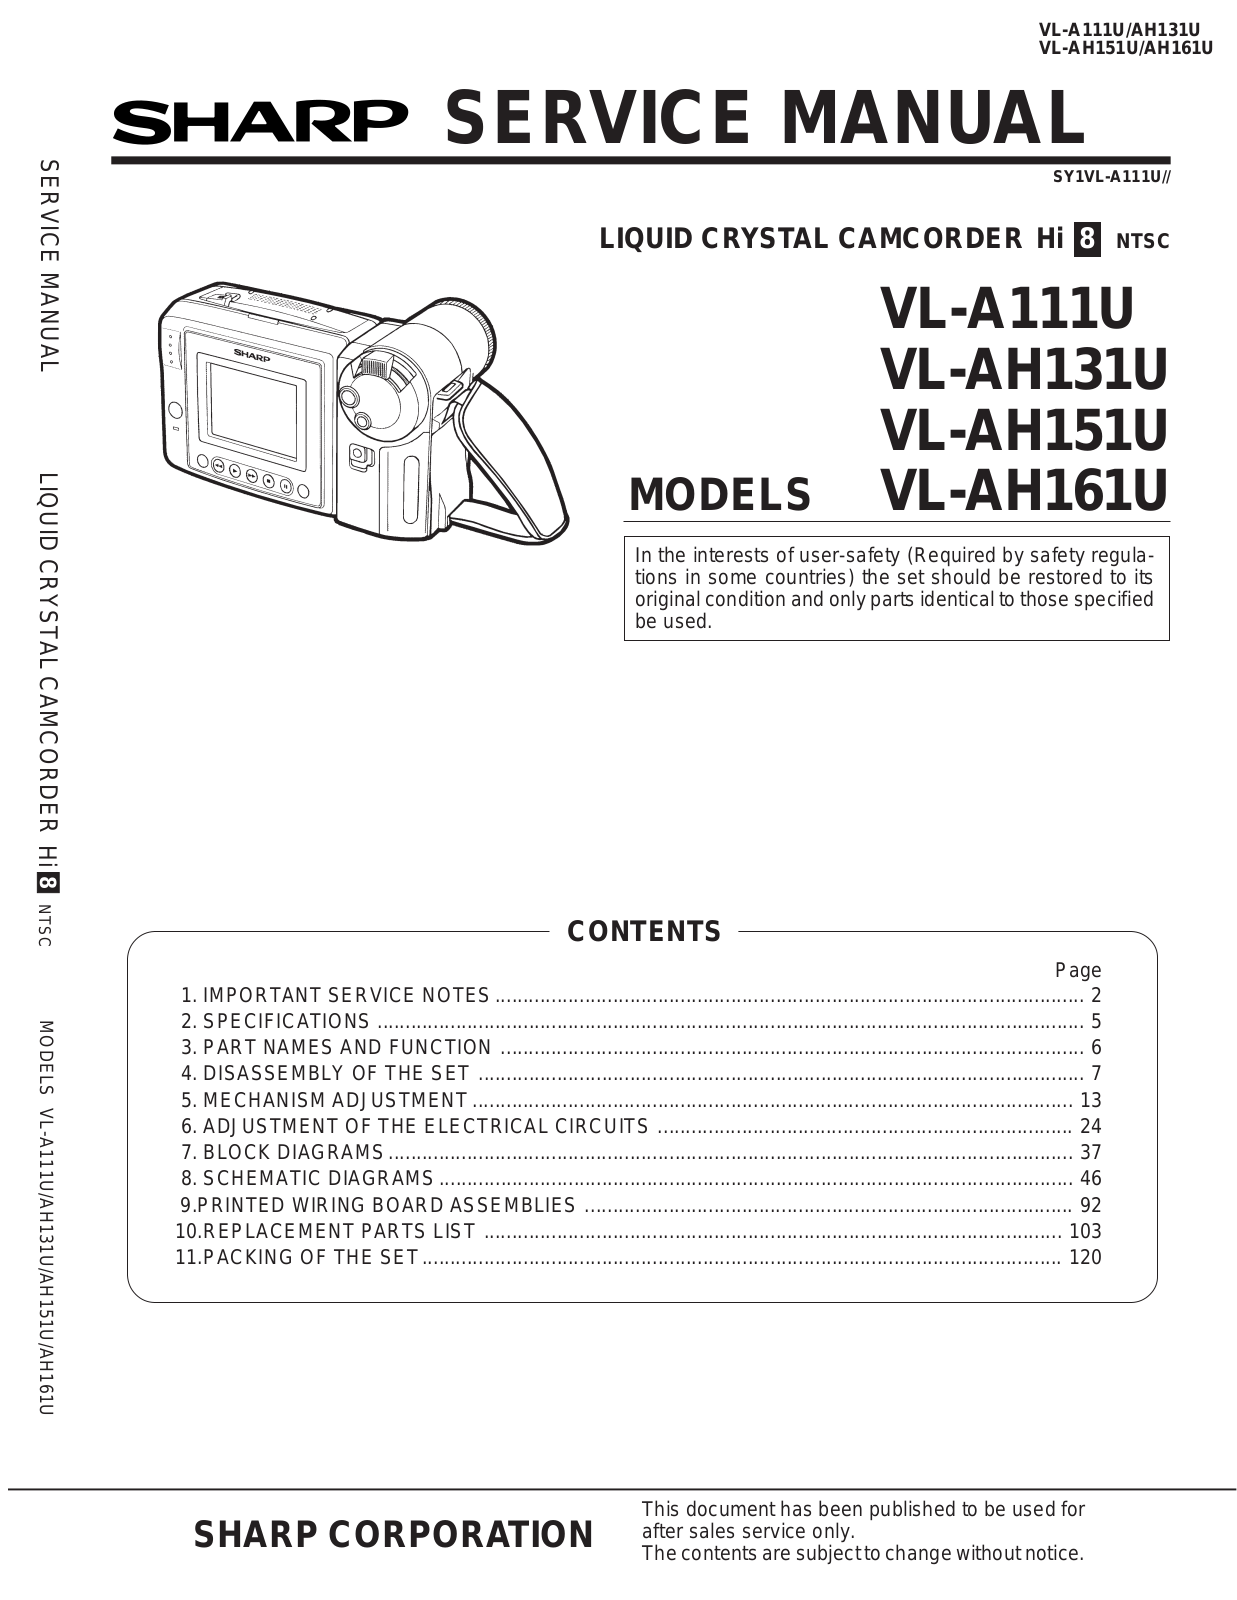 SHARP VL-A111U, VL-AH131U, VL-AH151U, VL-AH161U Service Manual